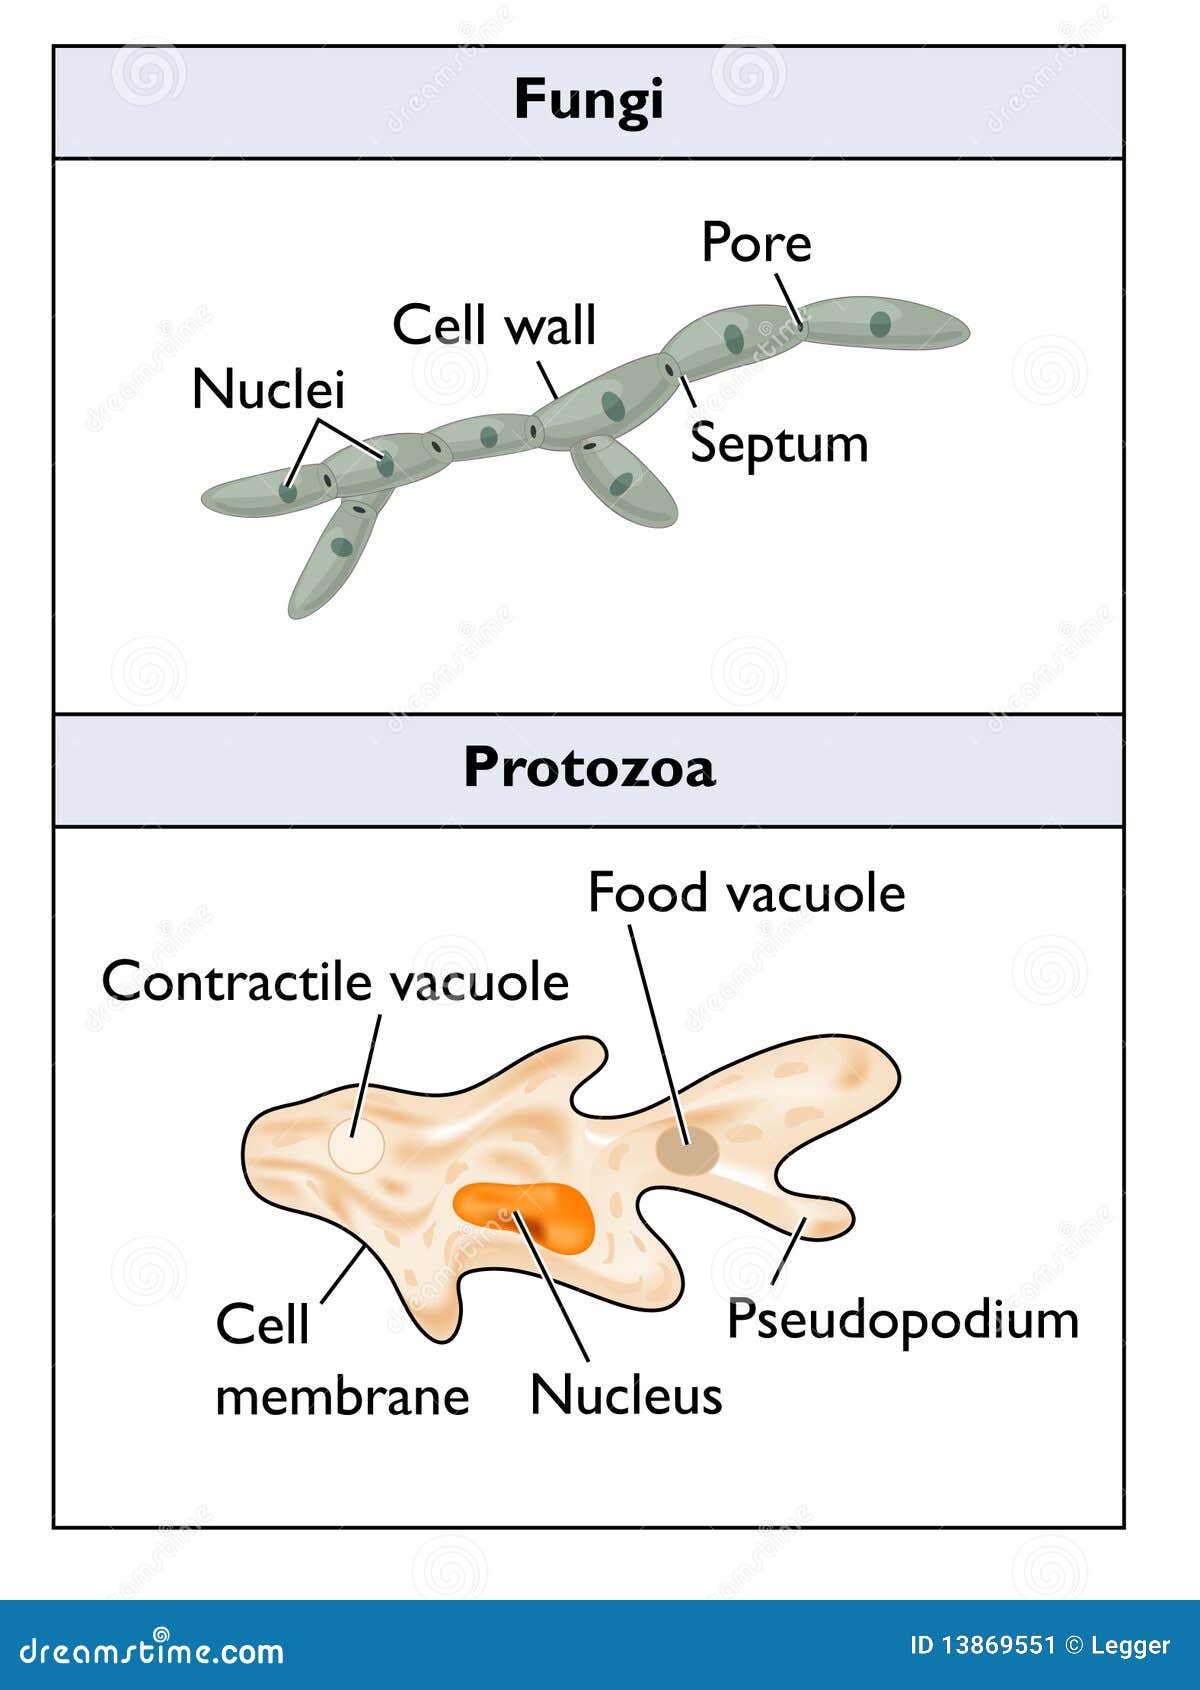 fungi and protozoa